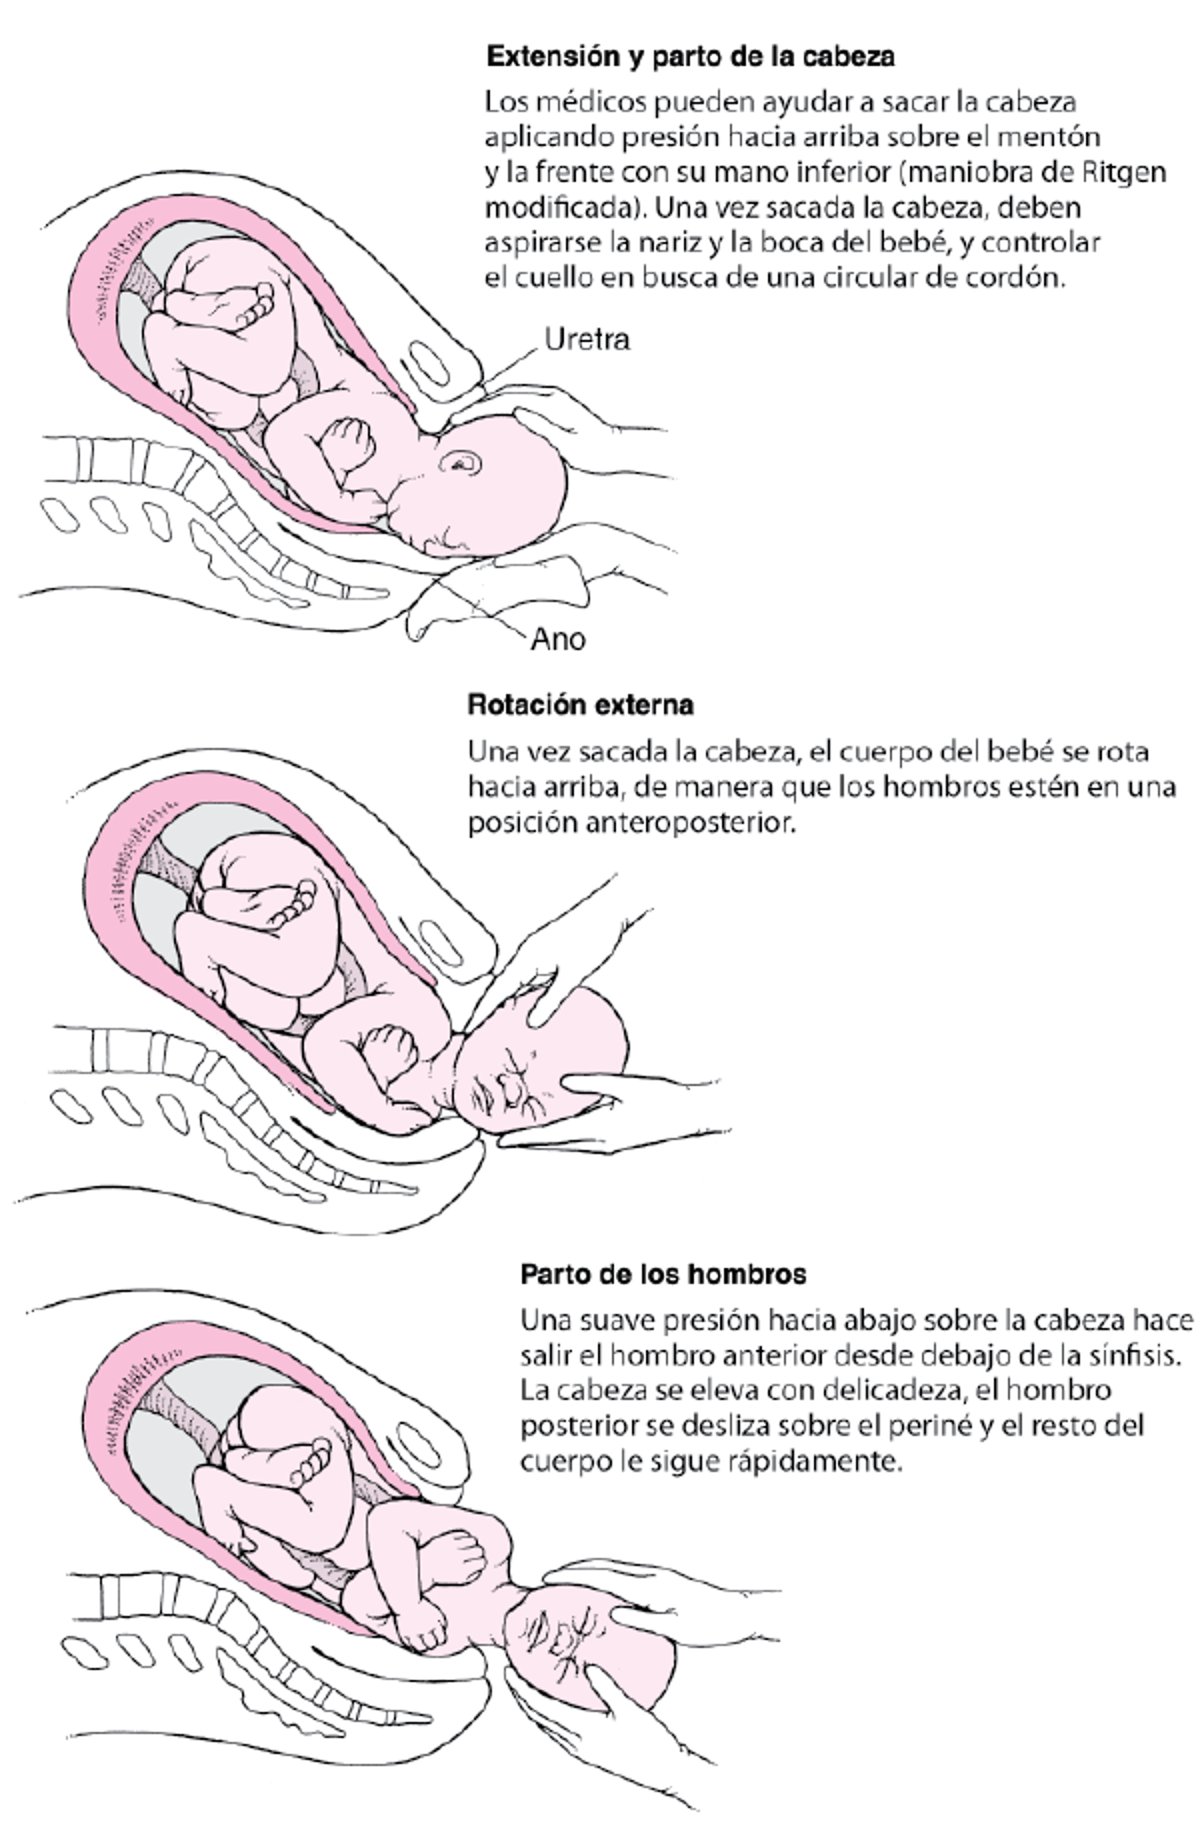 Secuencia de eventos en el parto para las presentaciones de vértice